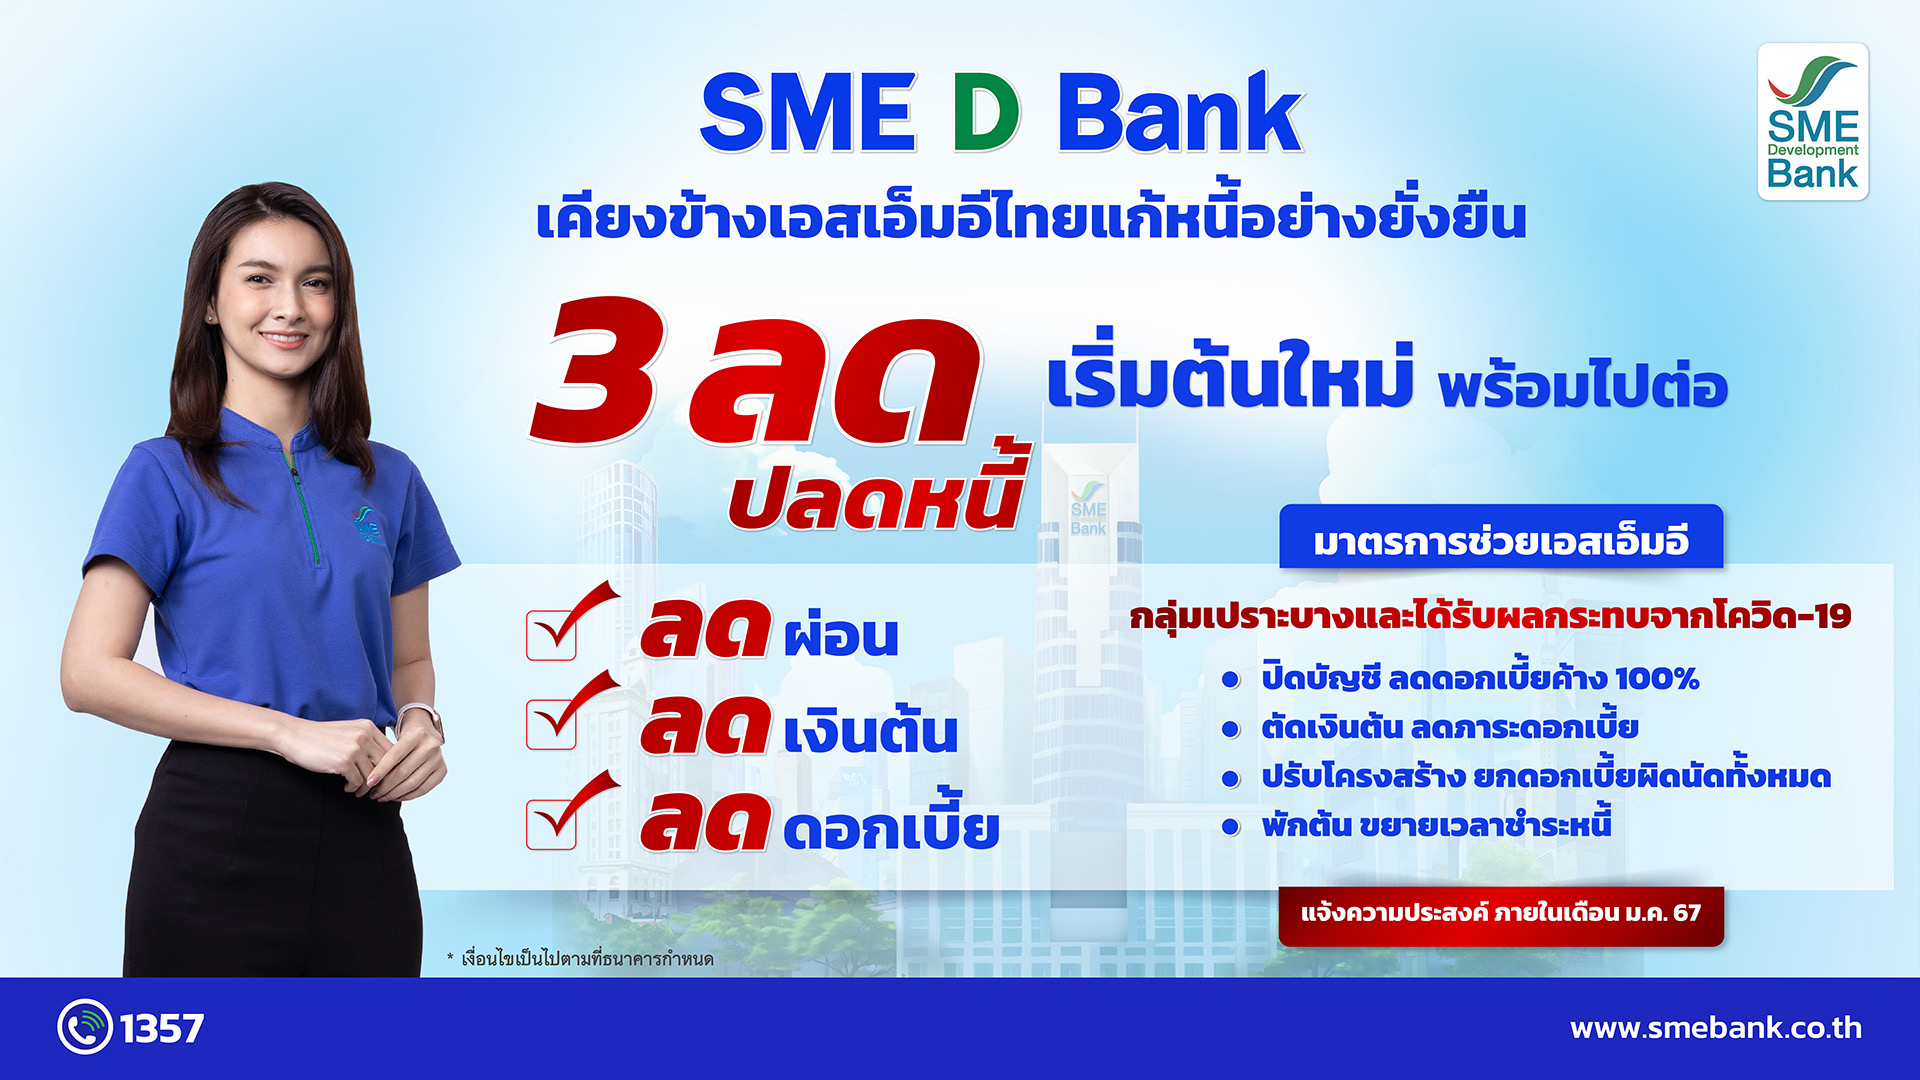 SME D Bank เคียงข้างเอสเอ็มอีไทย ดันมาตรการ ‘3 ลด ปลดหนี้’ สร้างโอกาสธุรกิจ เริ่มต้นใหม่ พร้อมไปต่อ